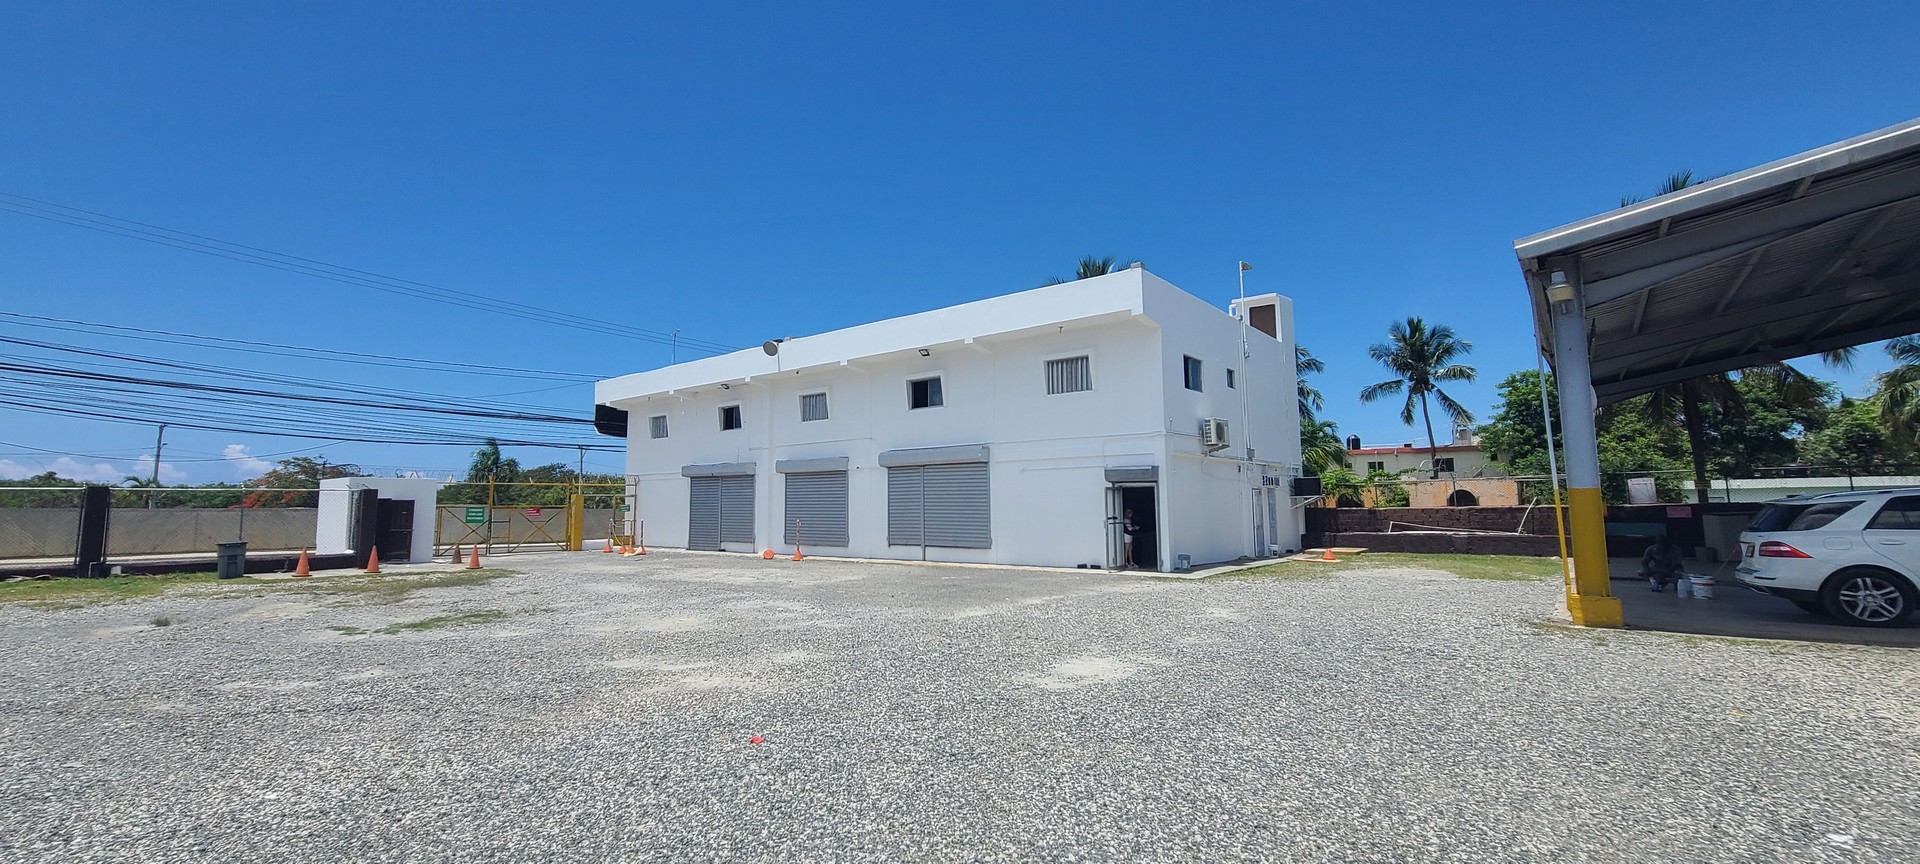 oficinas y locales comerciales - Local comercial en venta y alquiler en La Caleta, Boca Chica de 690m2 4